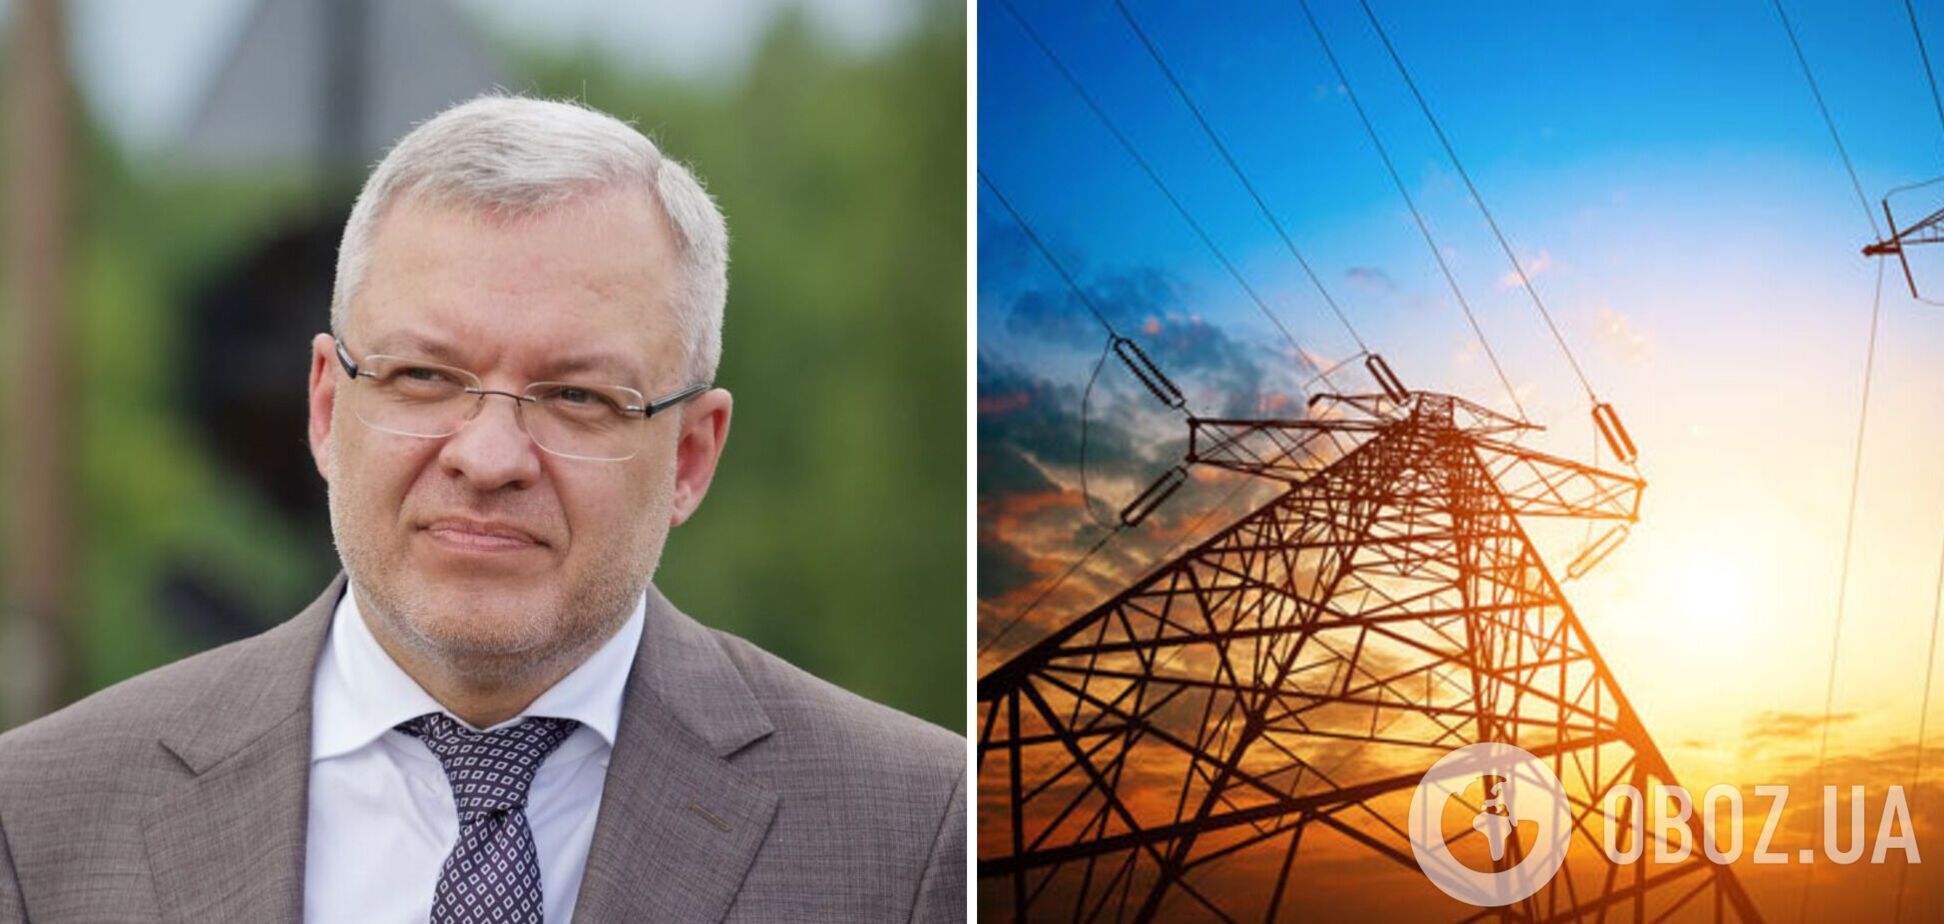 Украина возобновляет экспорт электроэнергии: самая сложная зима пройдена